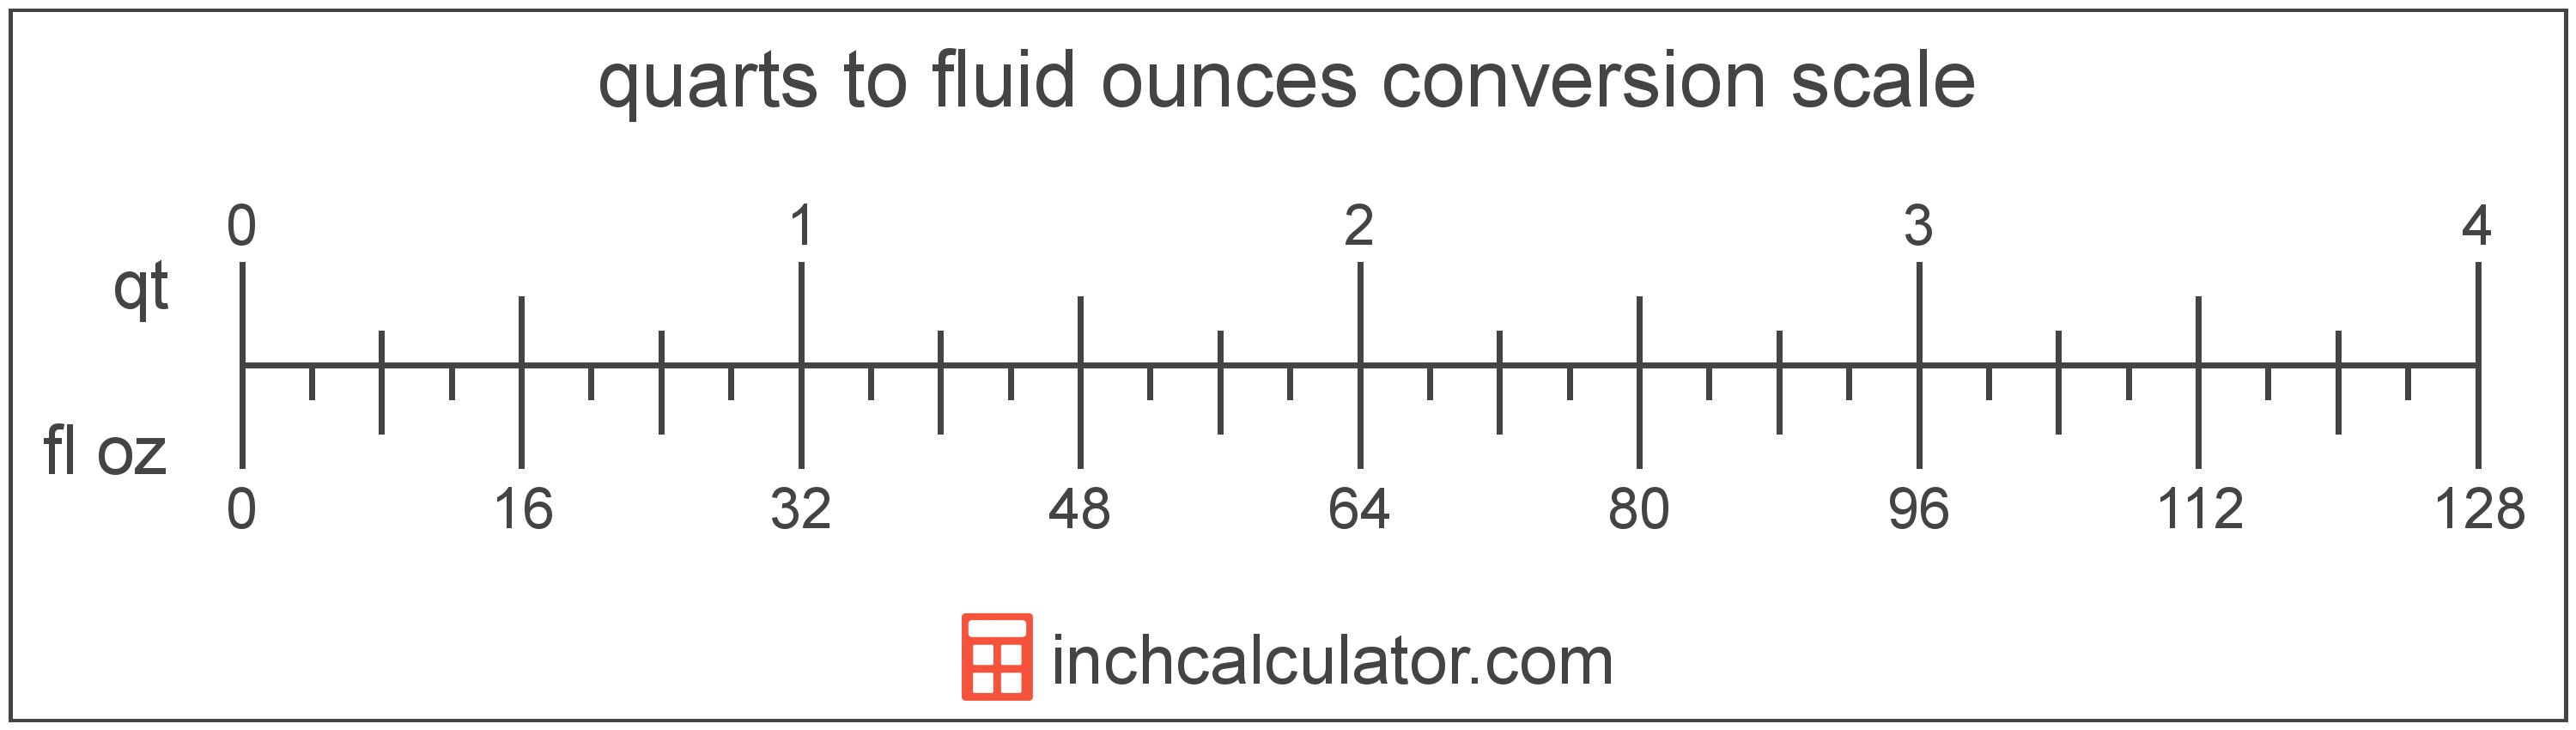 quarts-to-fluid-ounces-conversion-qt-to-fl-oz-inch-calculator